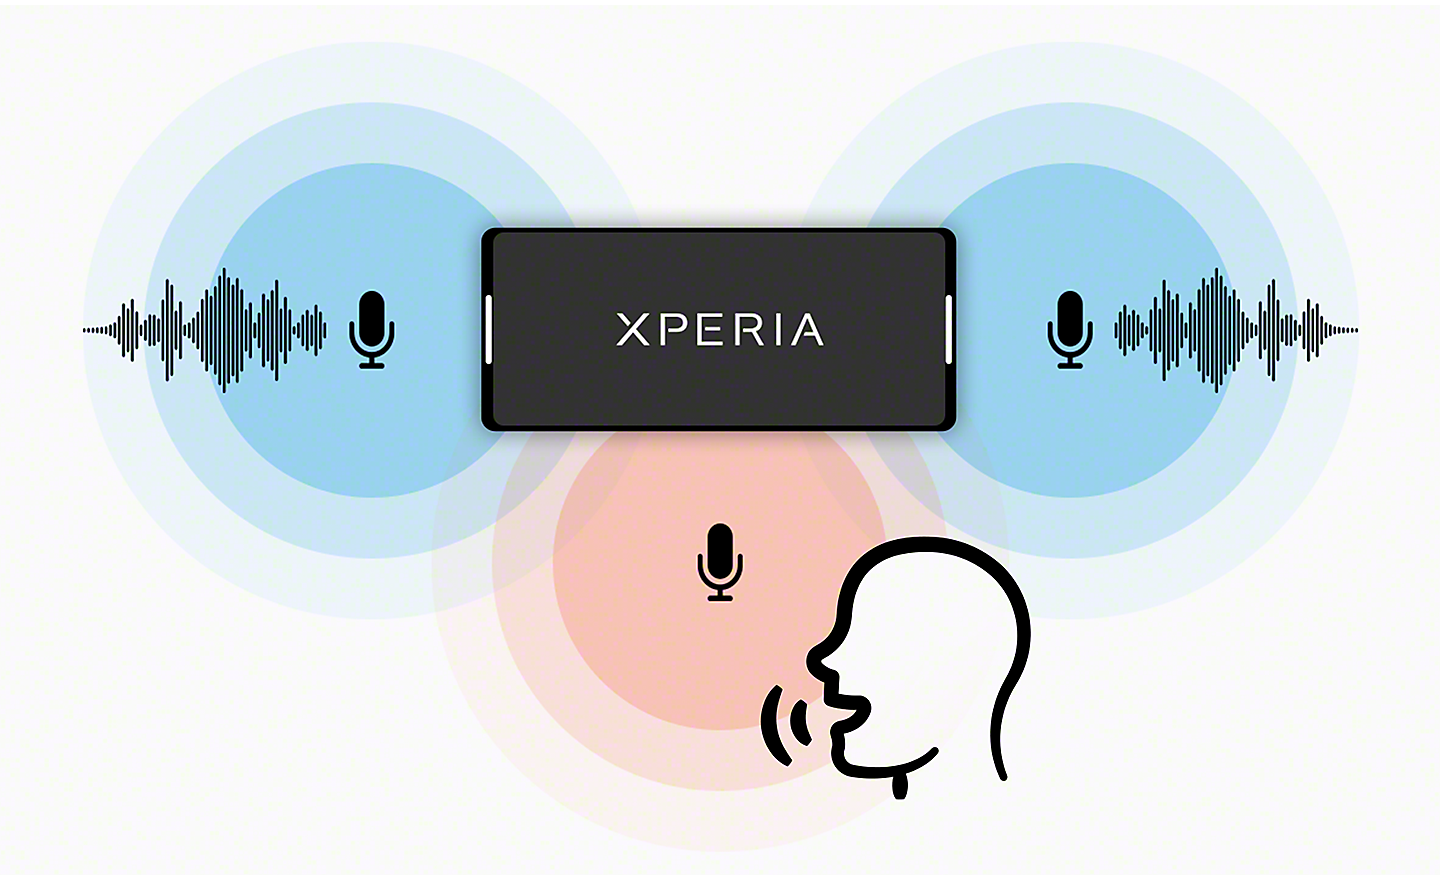 Xperia 與立體聲麥克風的插圖，加上正在錄製語音的單聲道麥克風